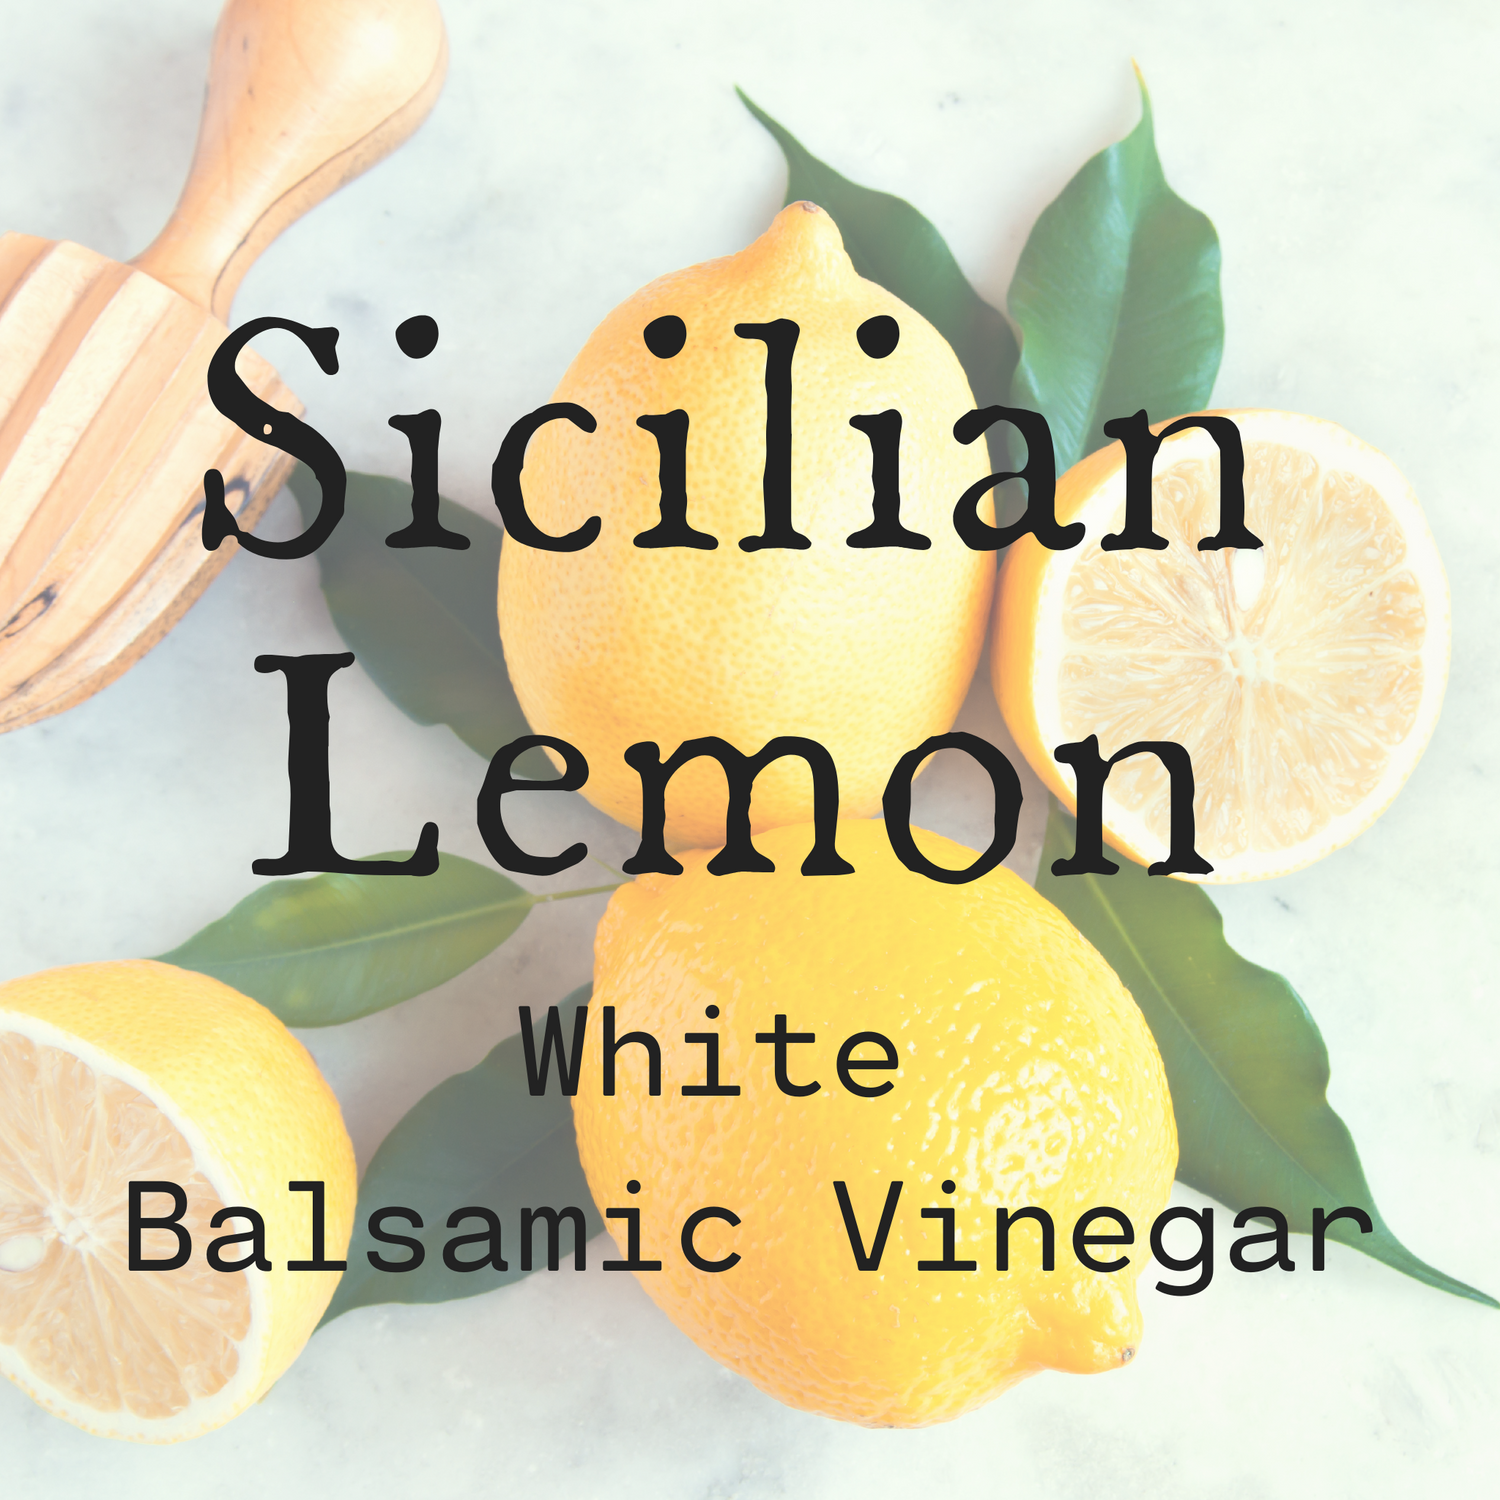 White Balsamic Vinegar